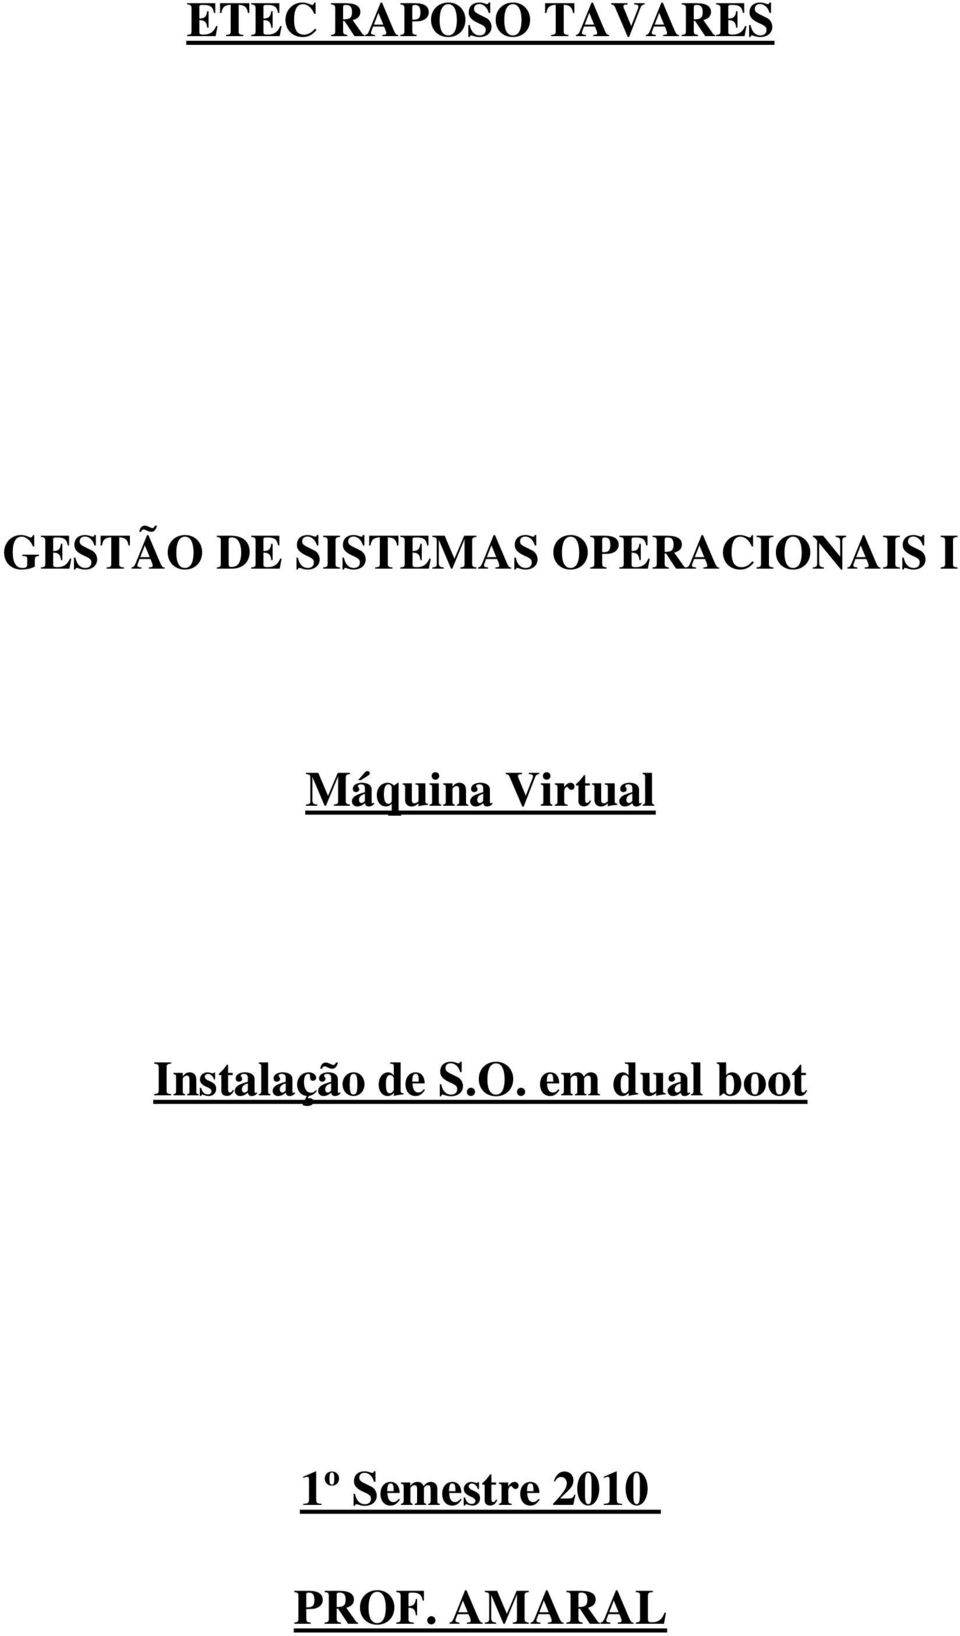 Virtual Instalação de S.O.